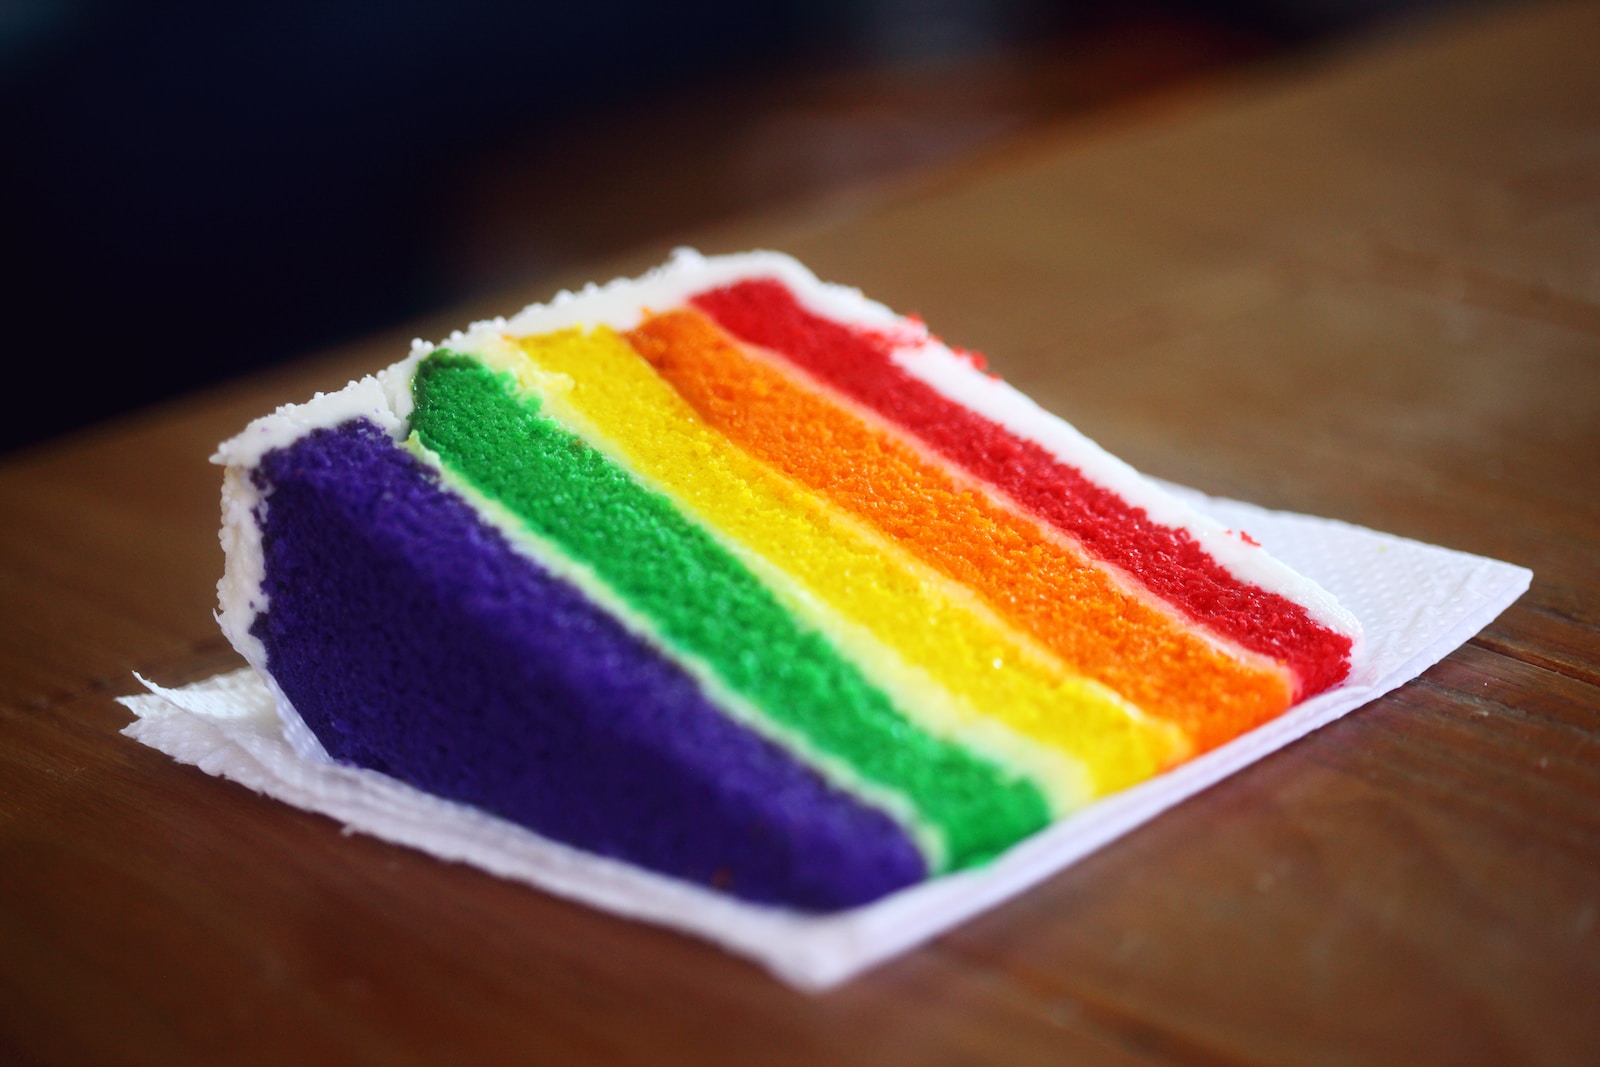 Rainbow cake maken